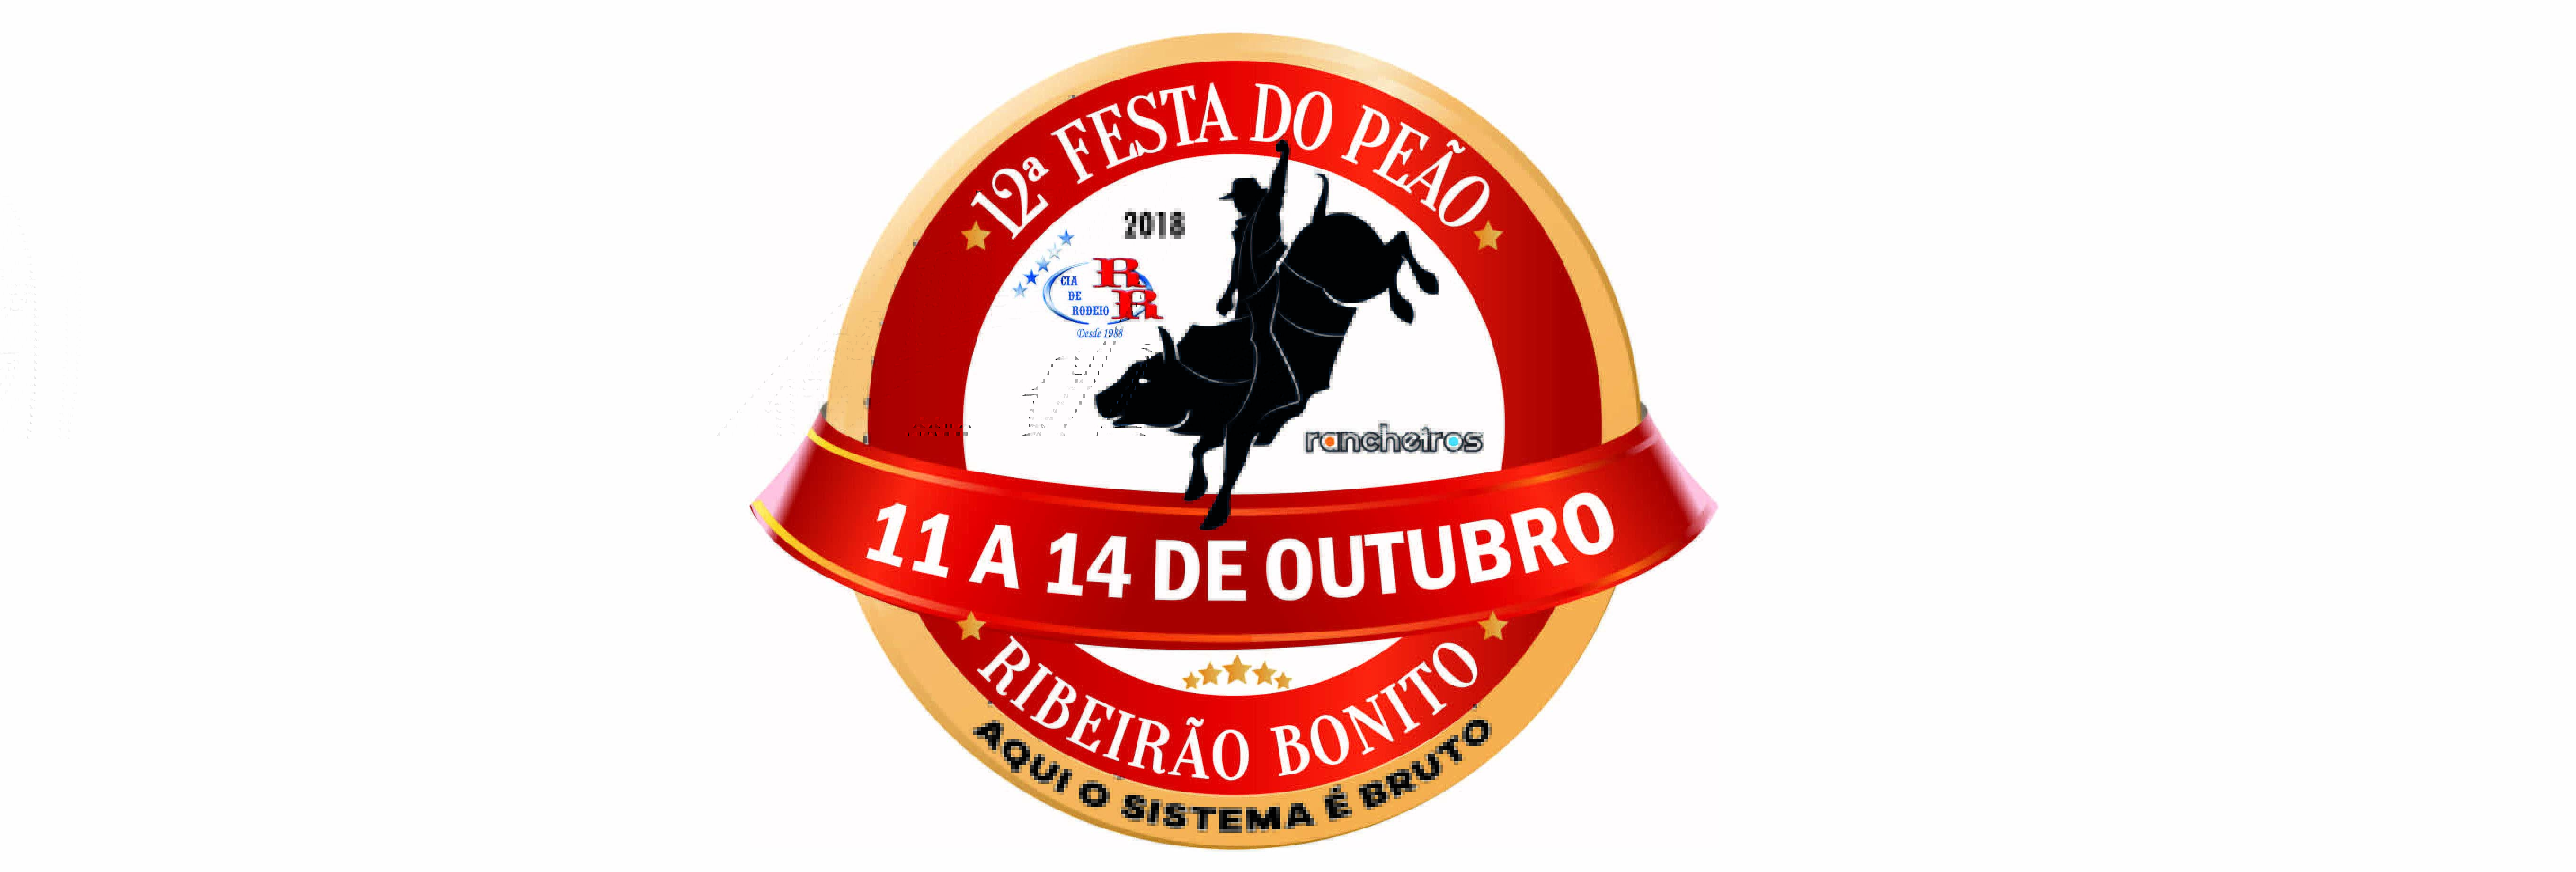 12ª Festa do Peão de Ribeirão Bonito acontecerá em outubro